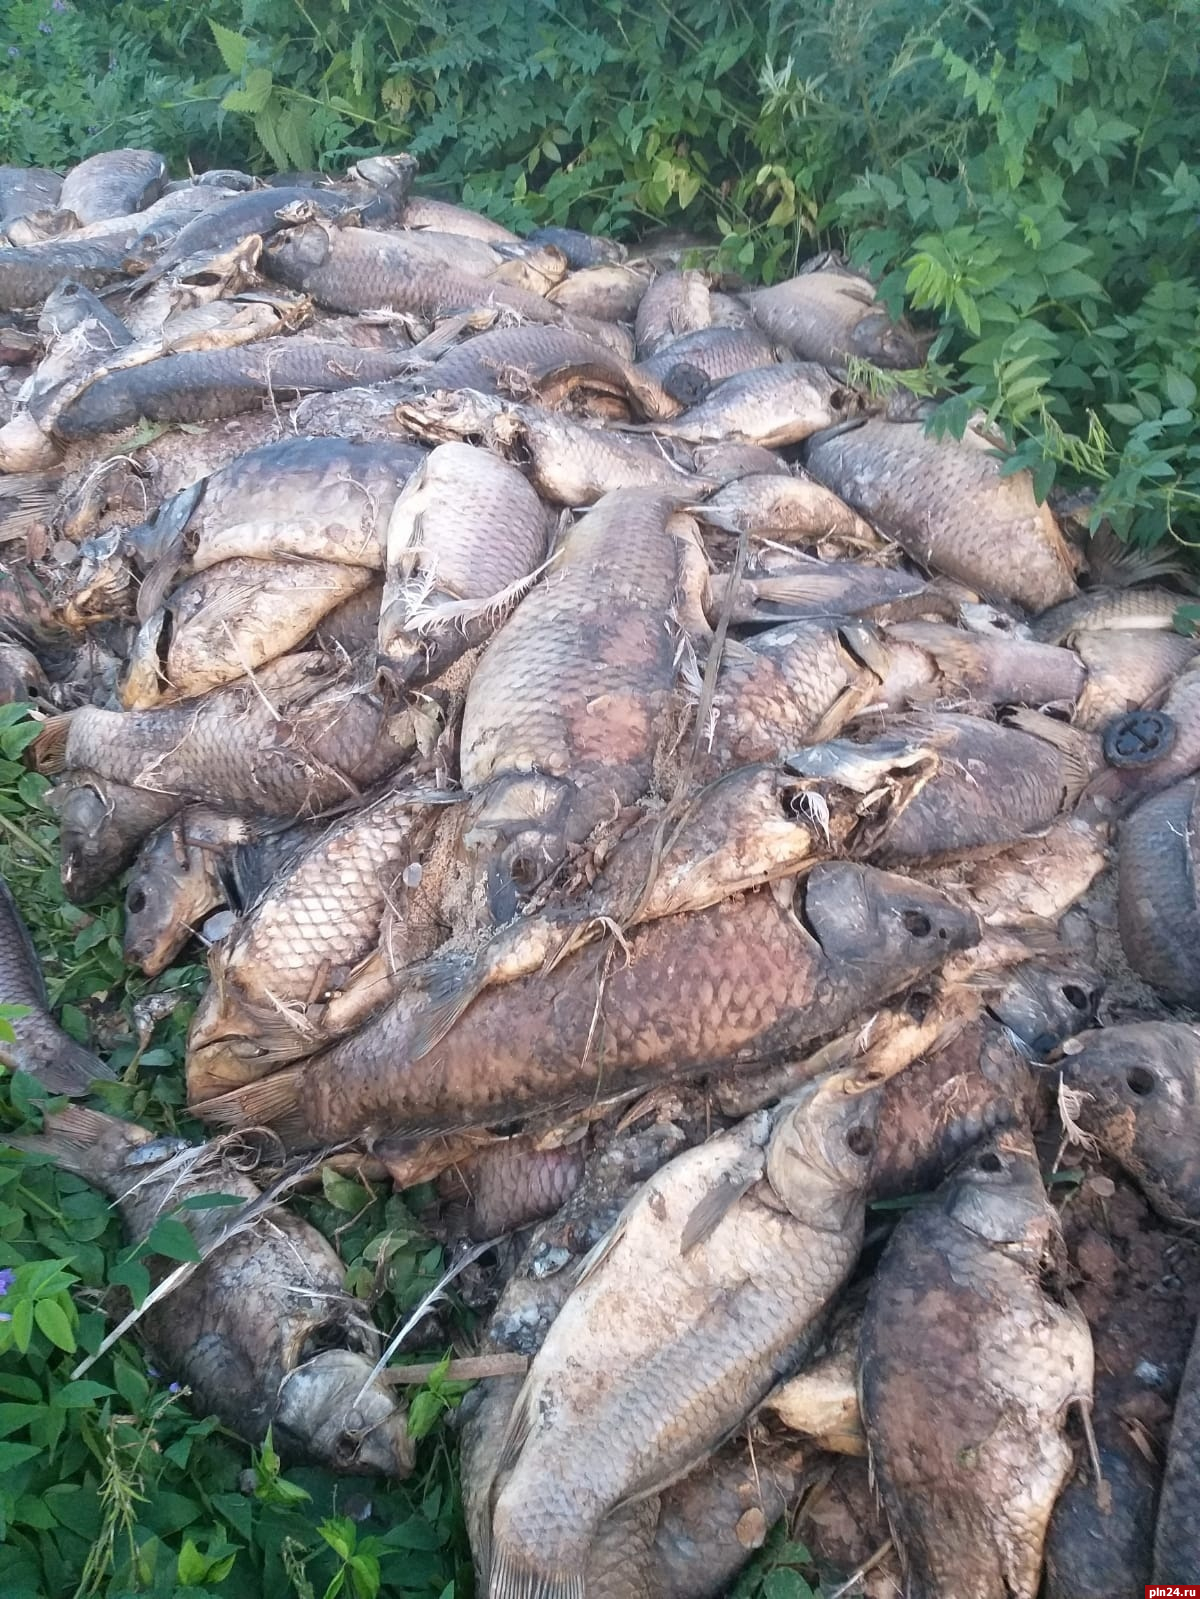 «Запах не самый лучший»: кучу выброшенной рыбы нашли в поле под Великими Луками